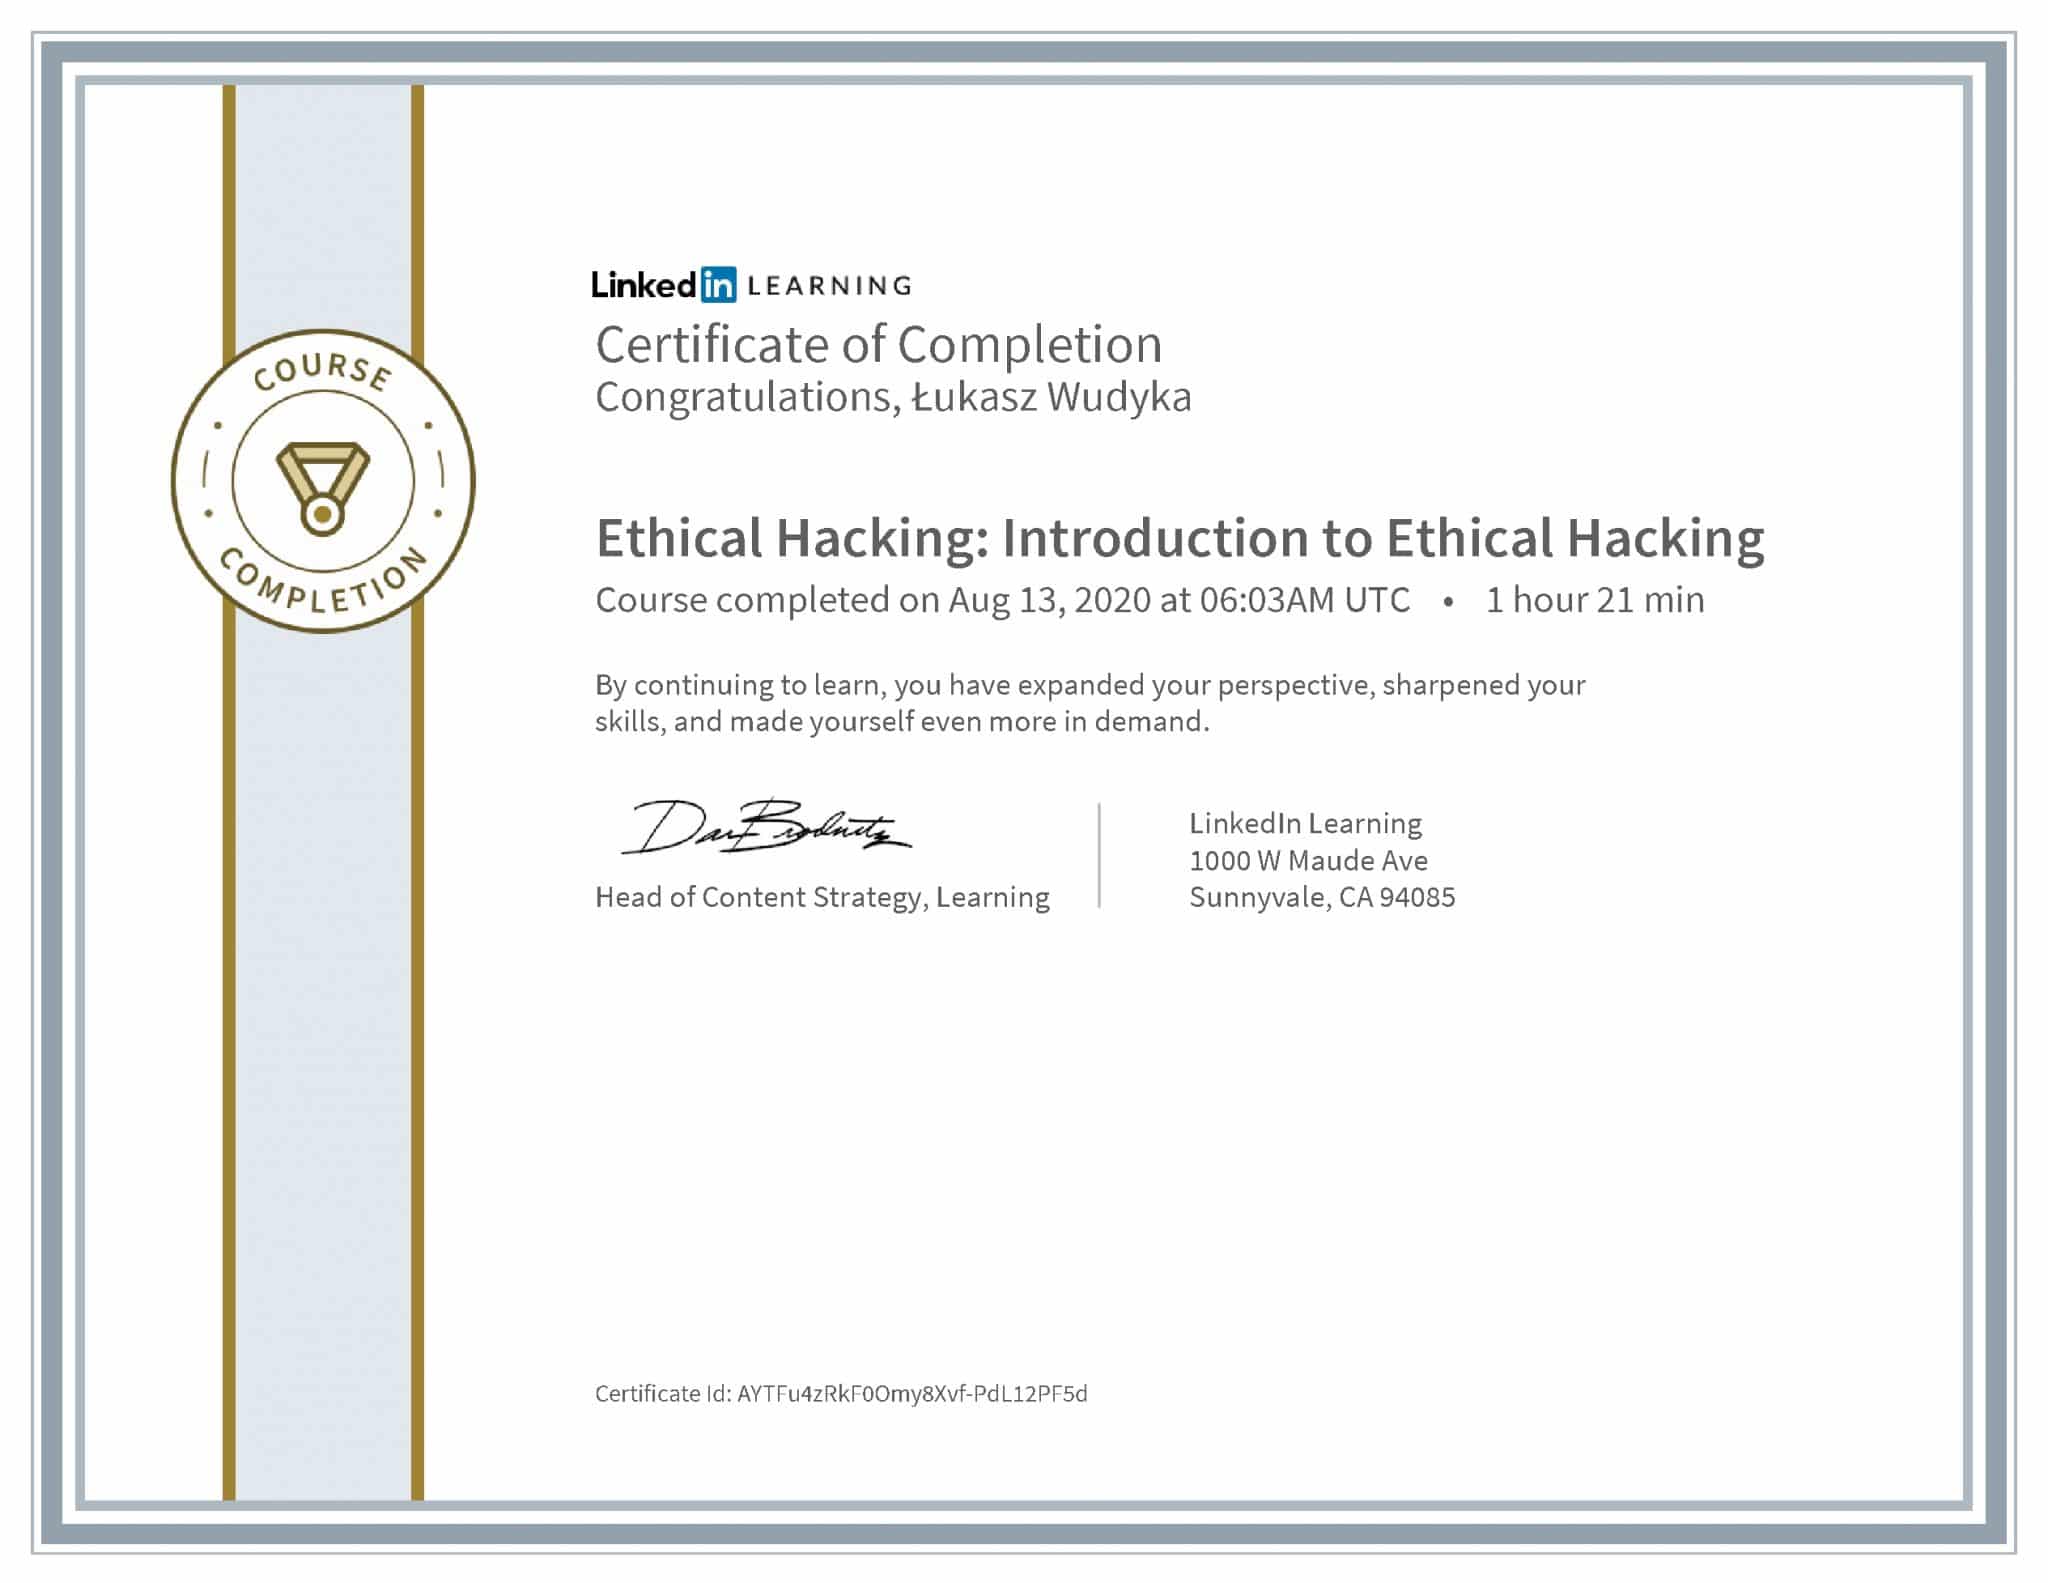 Łukasz Wudyka certyfikat LinkedIn Ethical Hacking: Introduction to Ethical Hacking